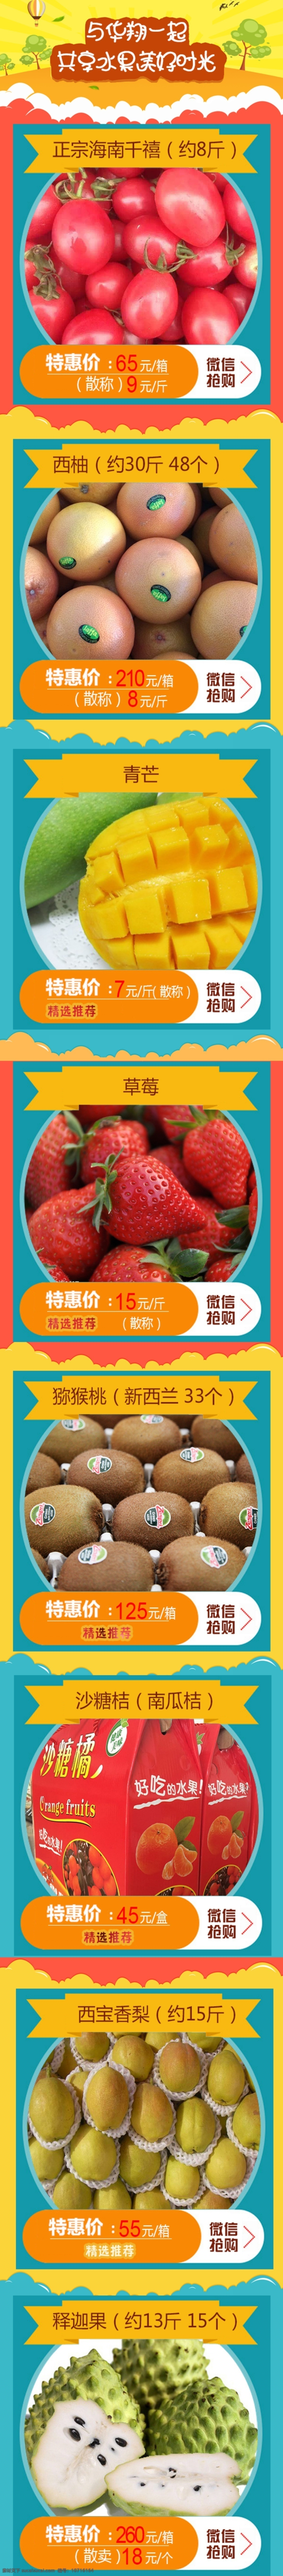 水果 热卖水果 水果销售 水果图片 水果海报 黄色